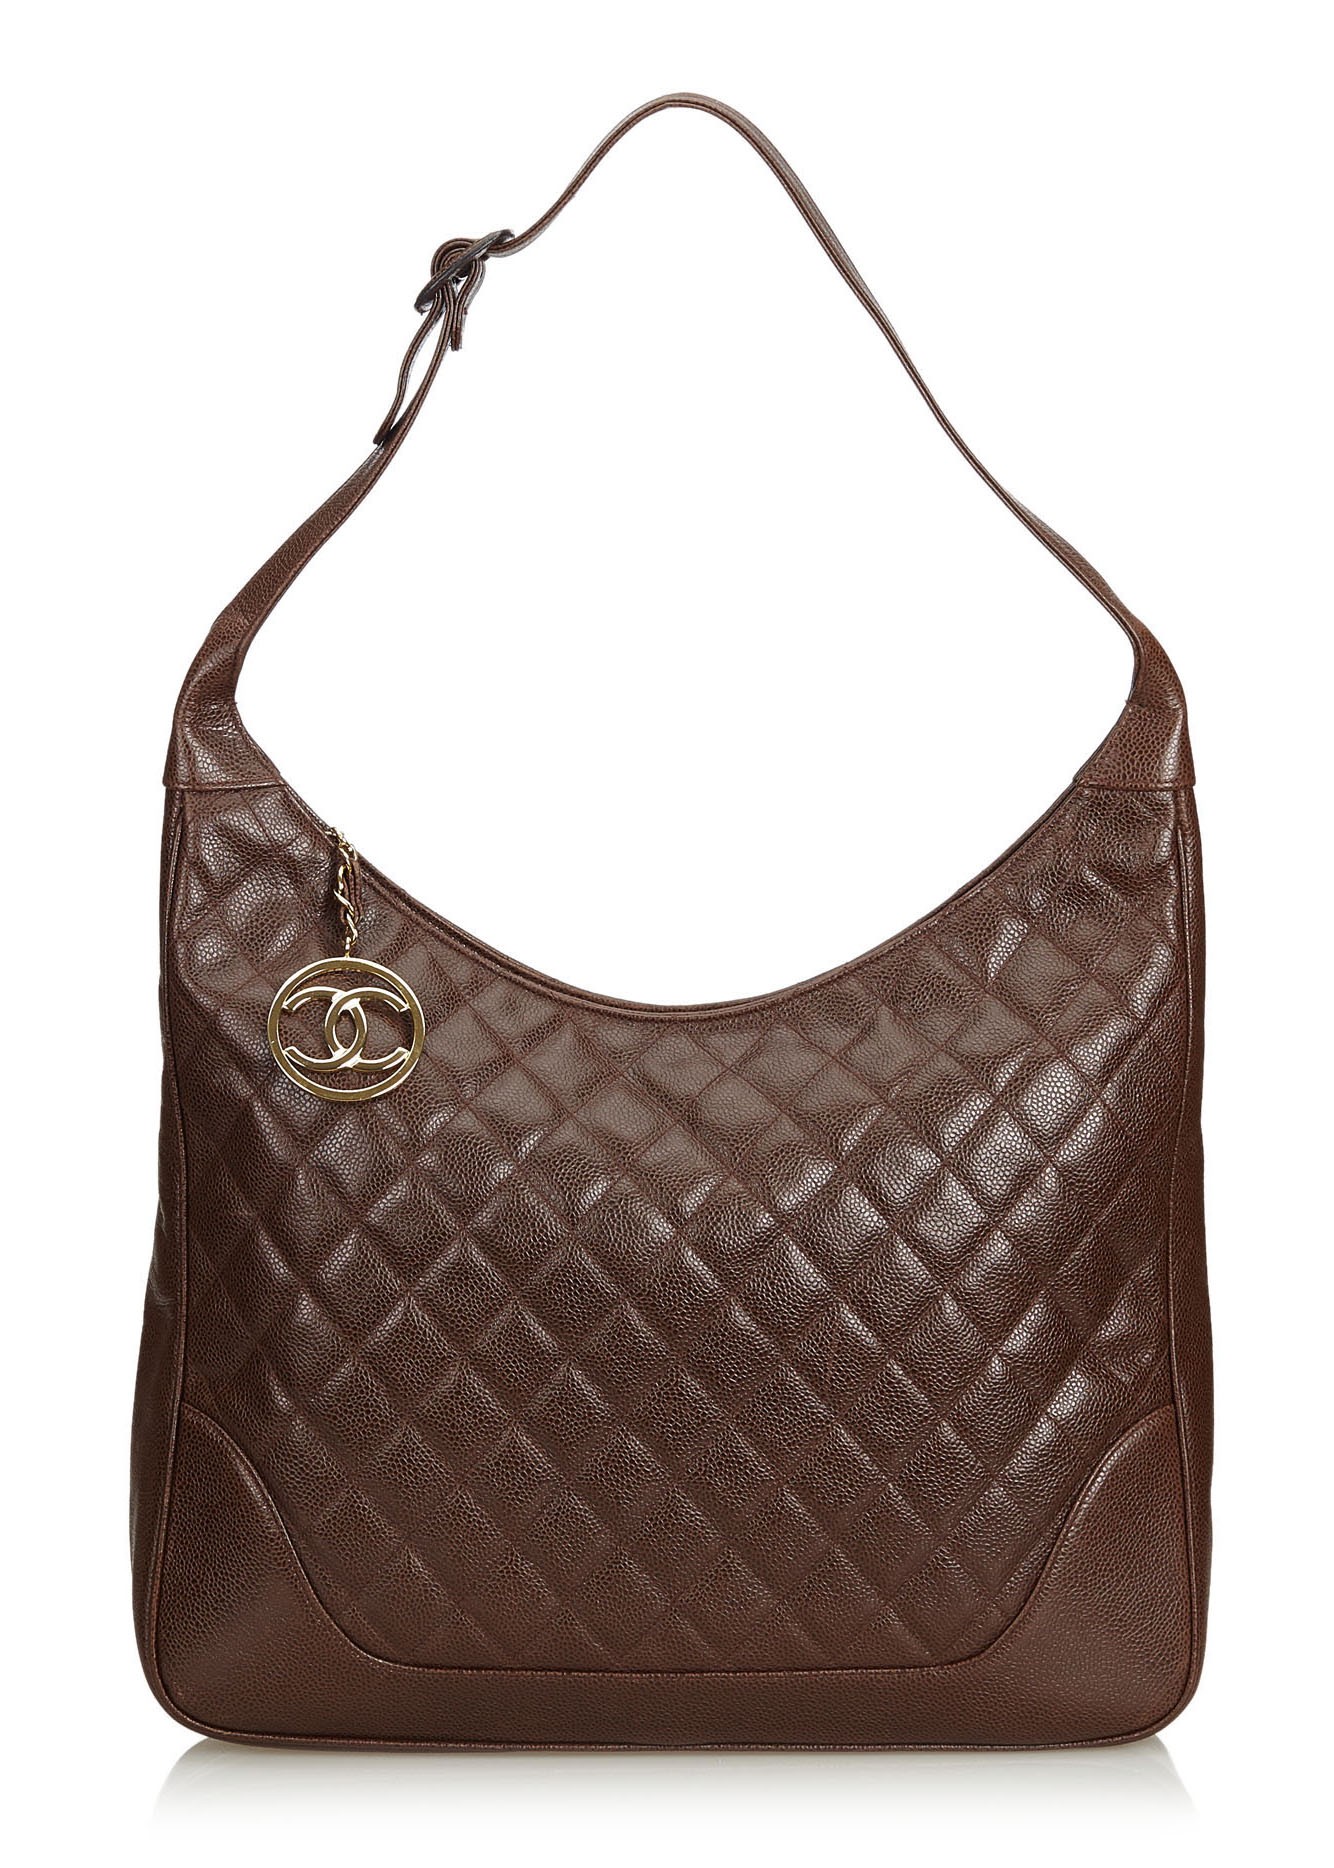 Chanel Vintage - Quilted Caviar Leather Shoulder Bag - Brown